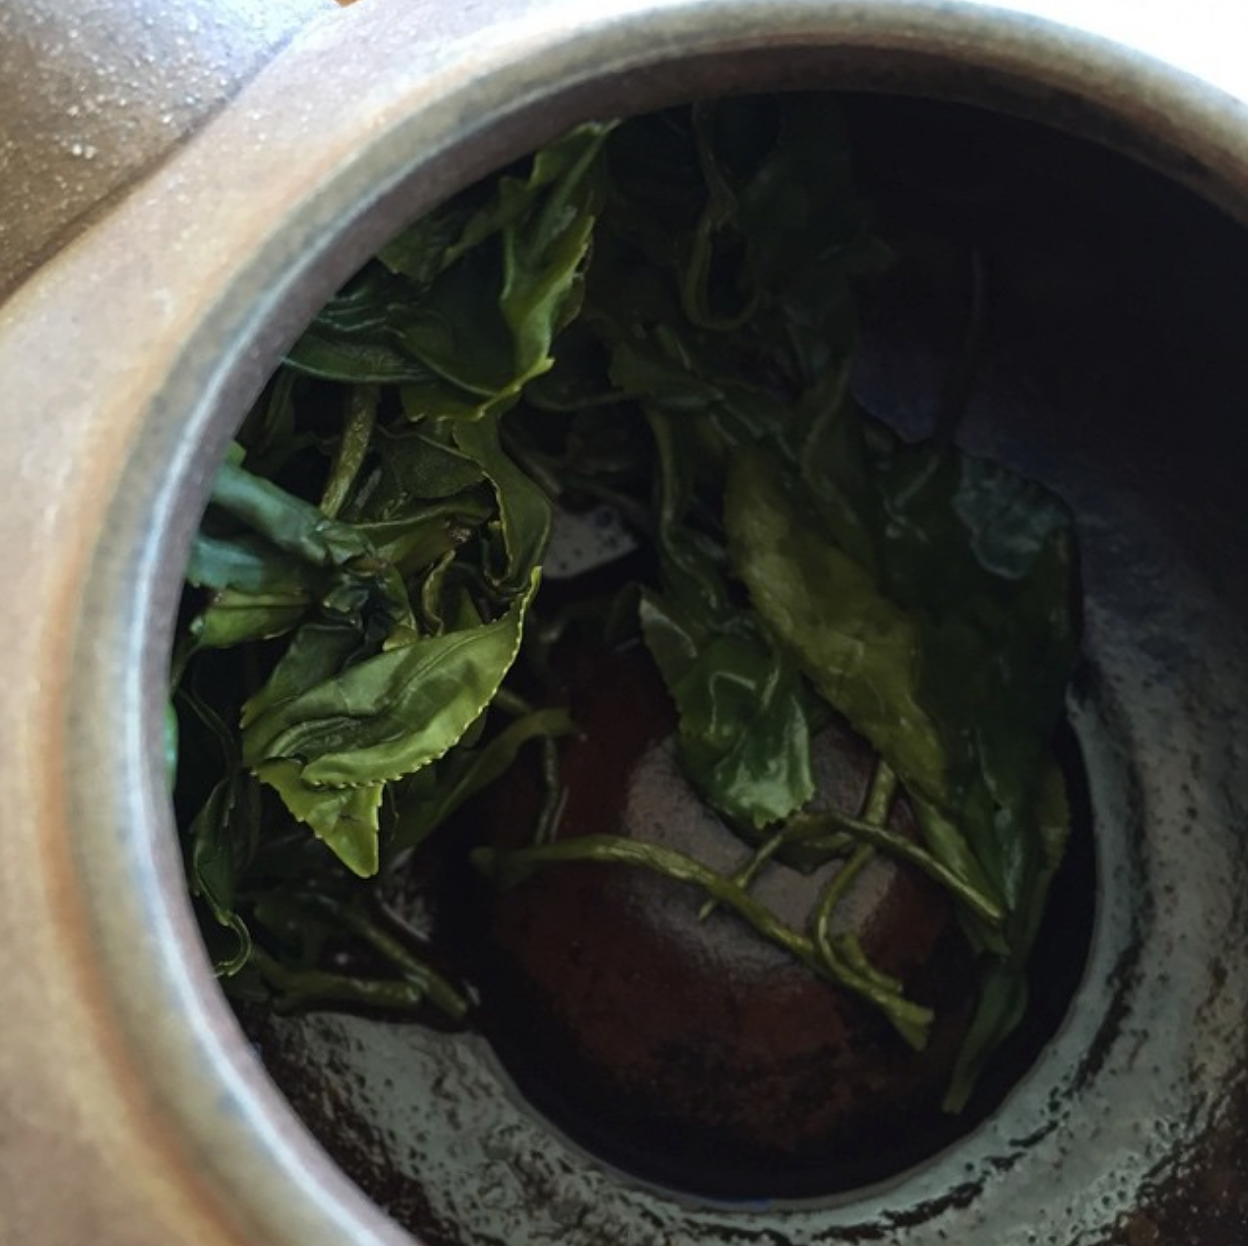 ENRICHD TEA Experience: Lions Mane and Green Tea